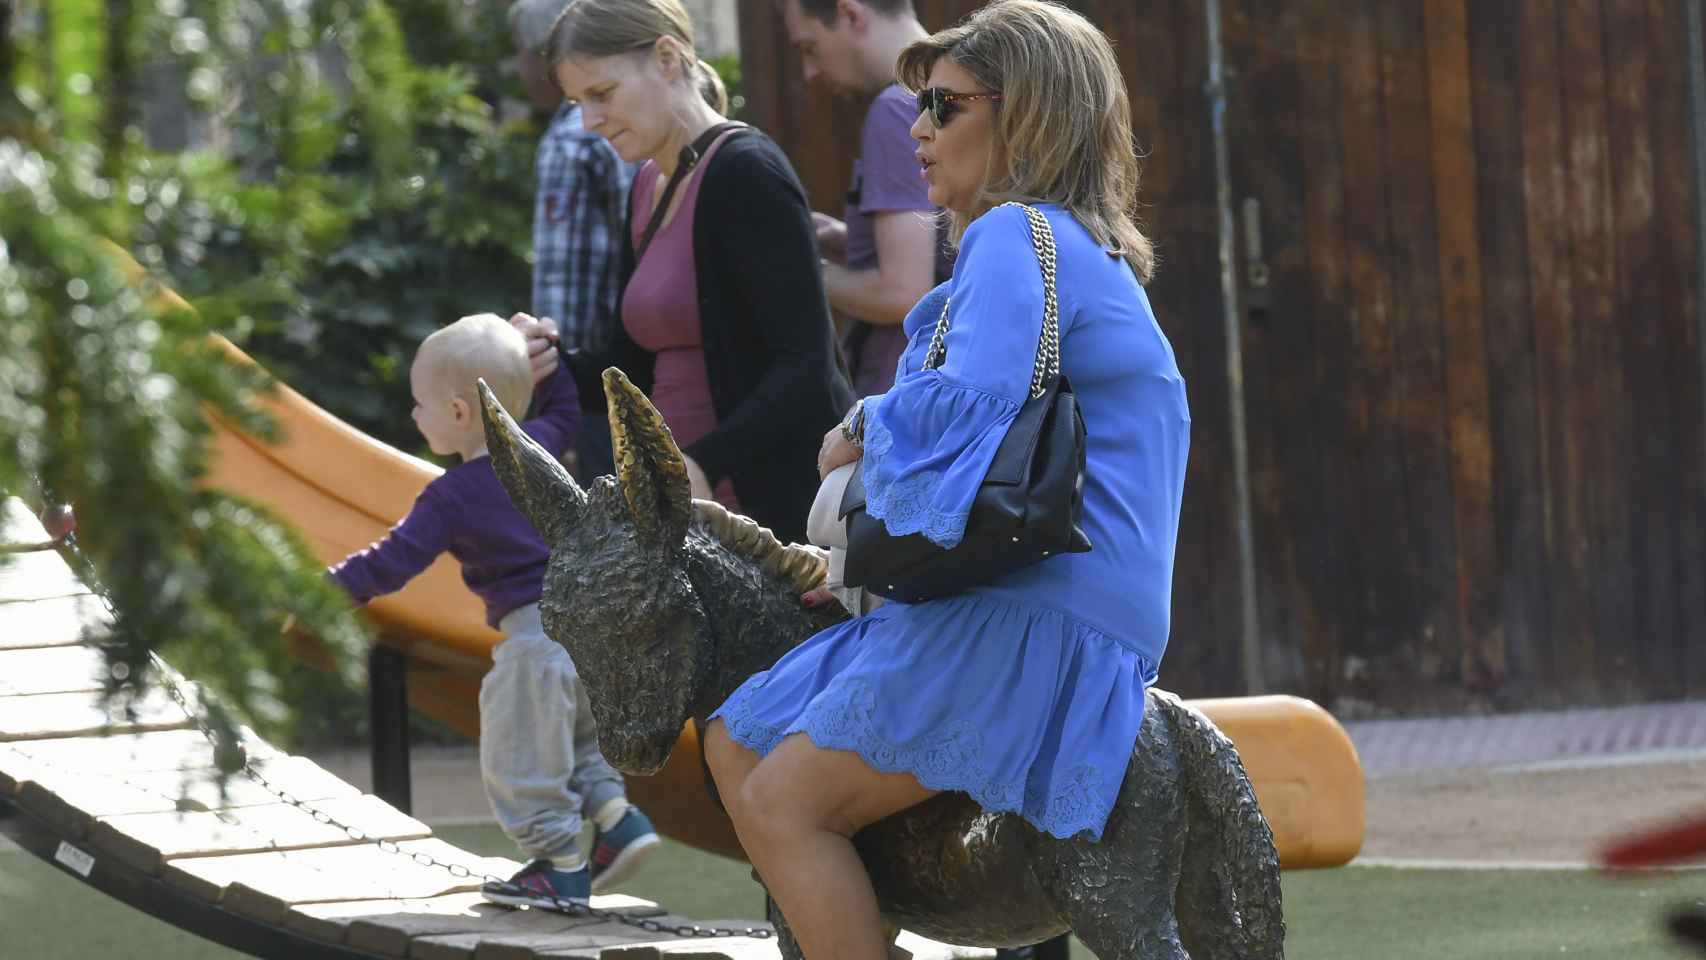 Terelu Campos montada en una escultura en forma de burro durante el rodaje